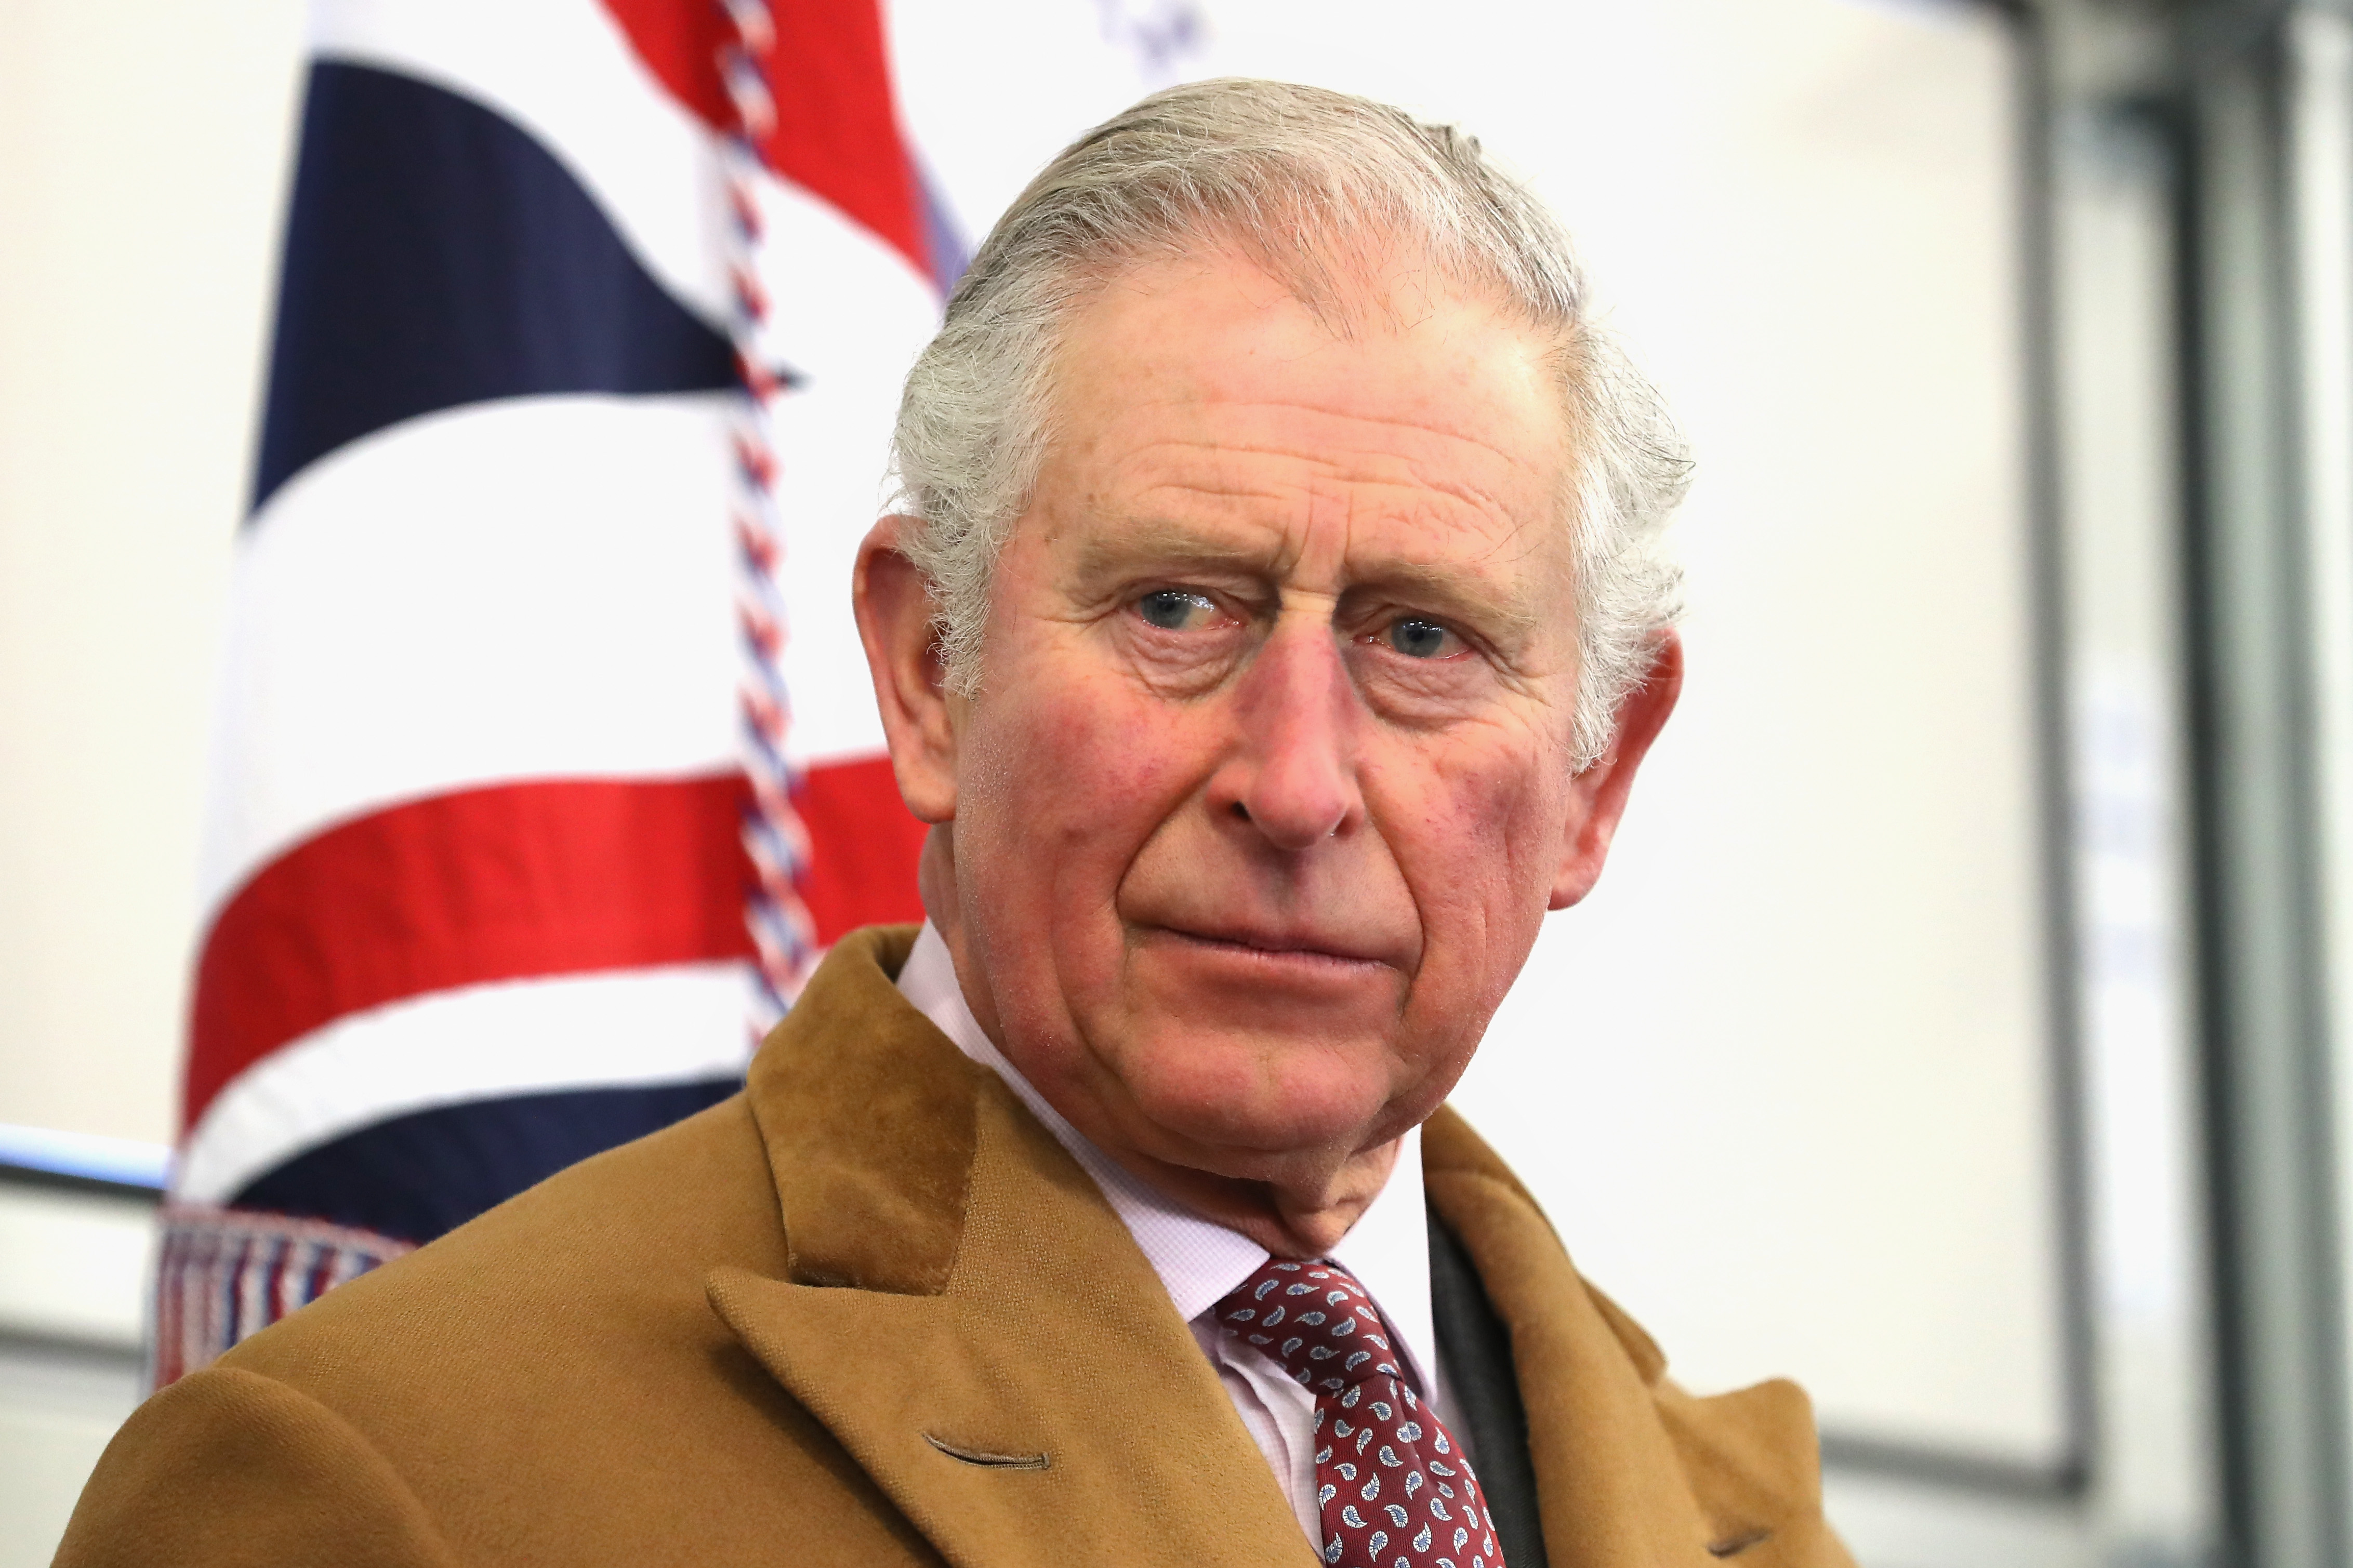 Le roi Charles III, ancien prince de Galles, à la station de service d'urgence de Barnard Castle le 15 février 2018 | Source : Getty Images